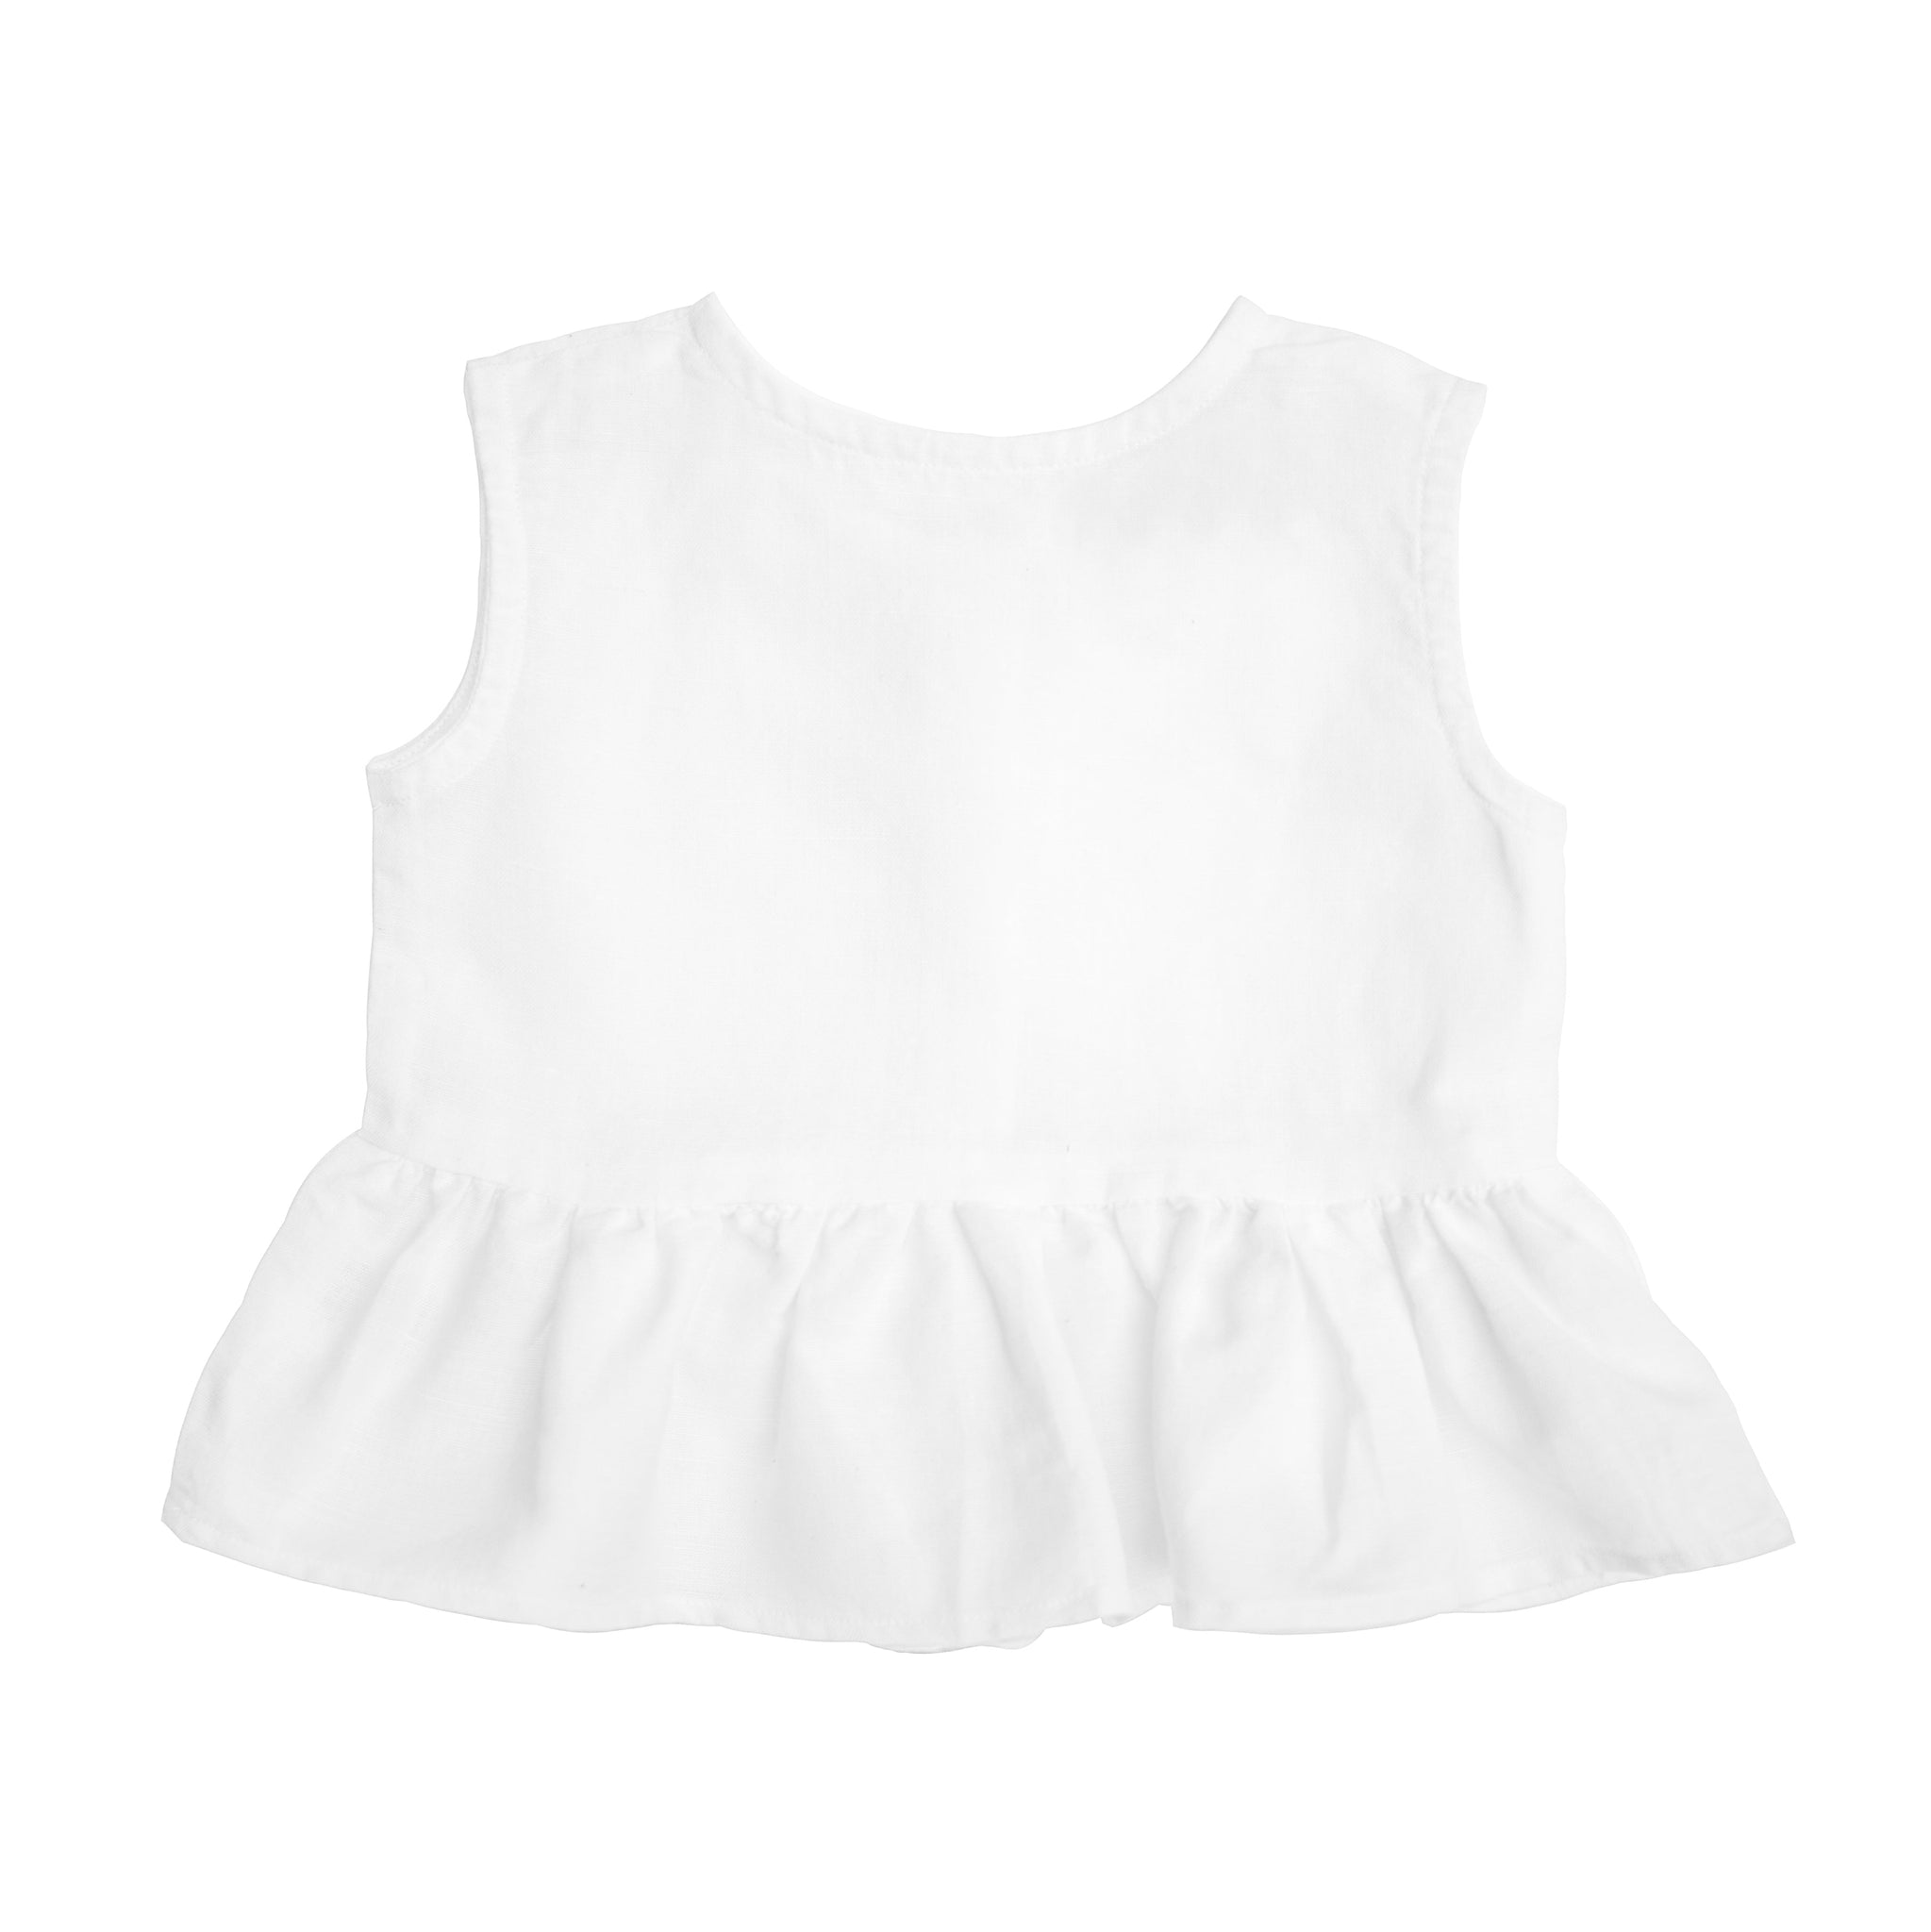 Sleeveless frill blouse | white linen - HoneyBug 